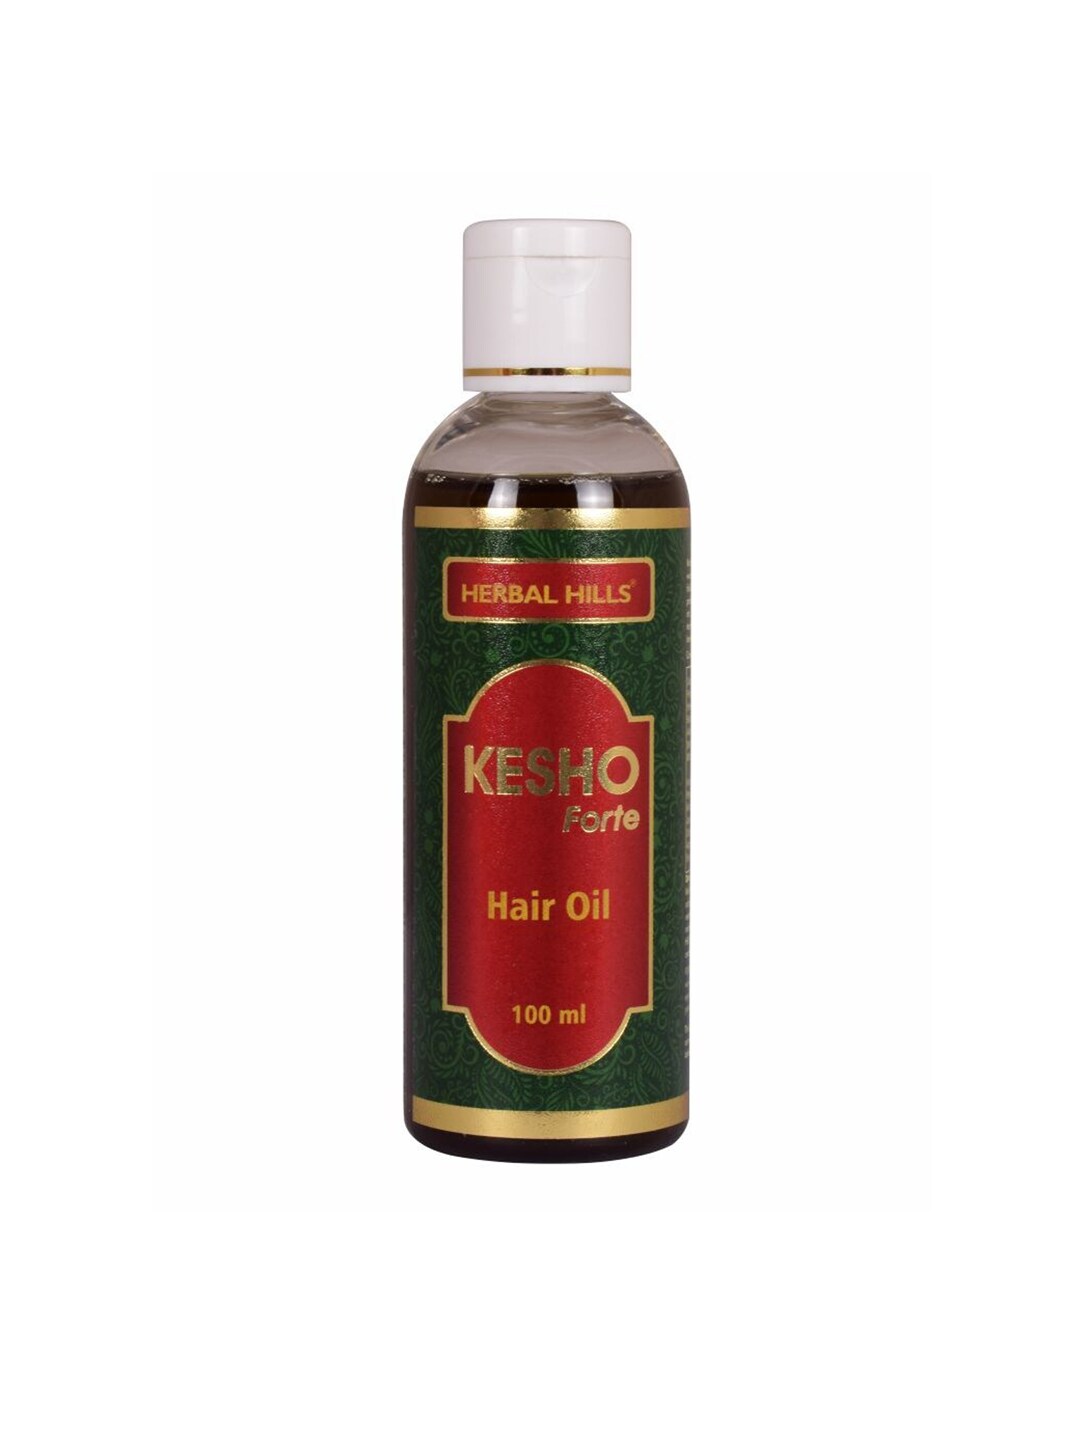 Herbal Hills Kesho Forte Hair Oil 100ml Price in India